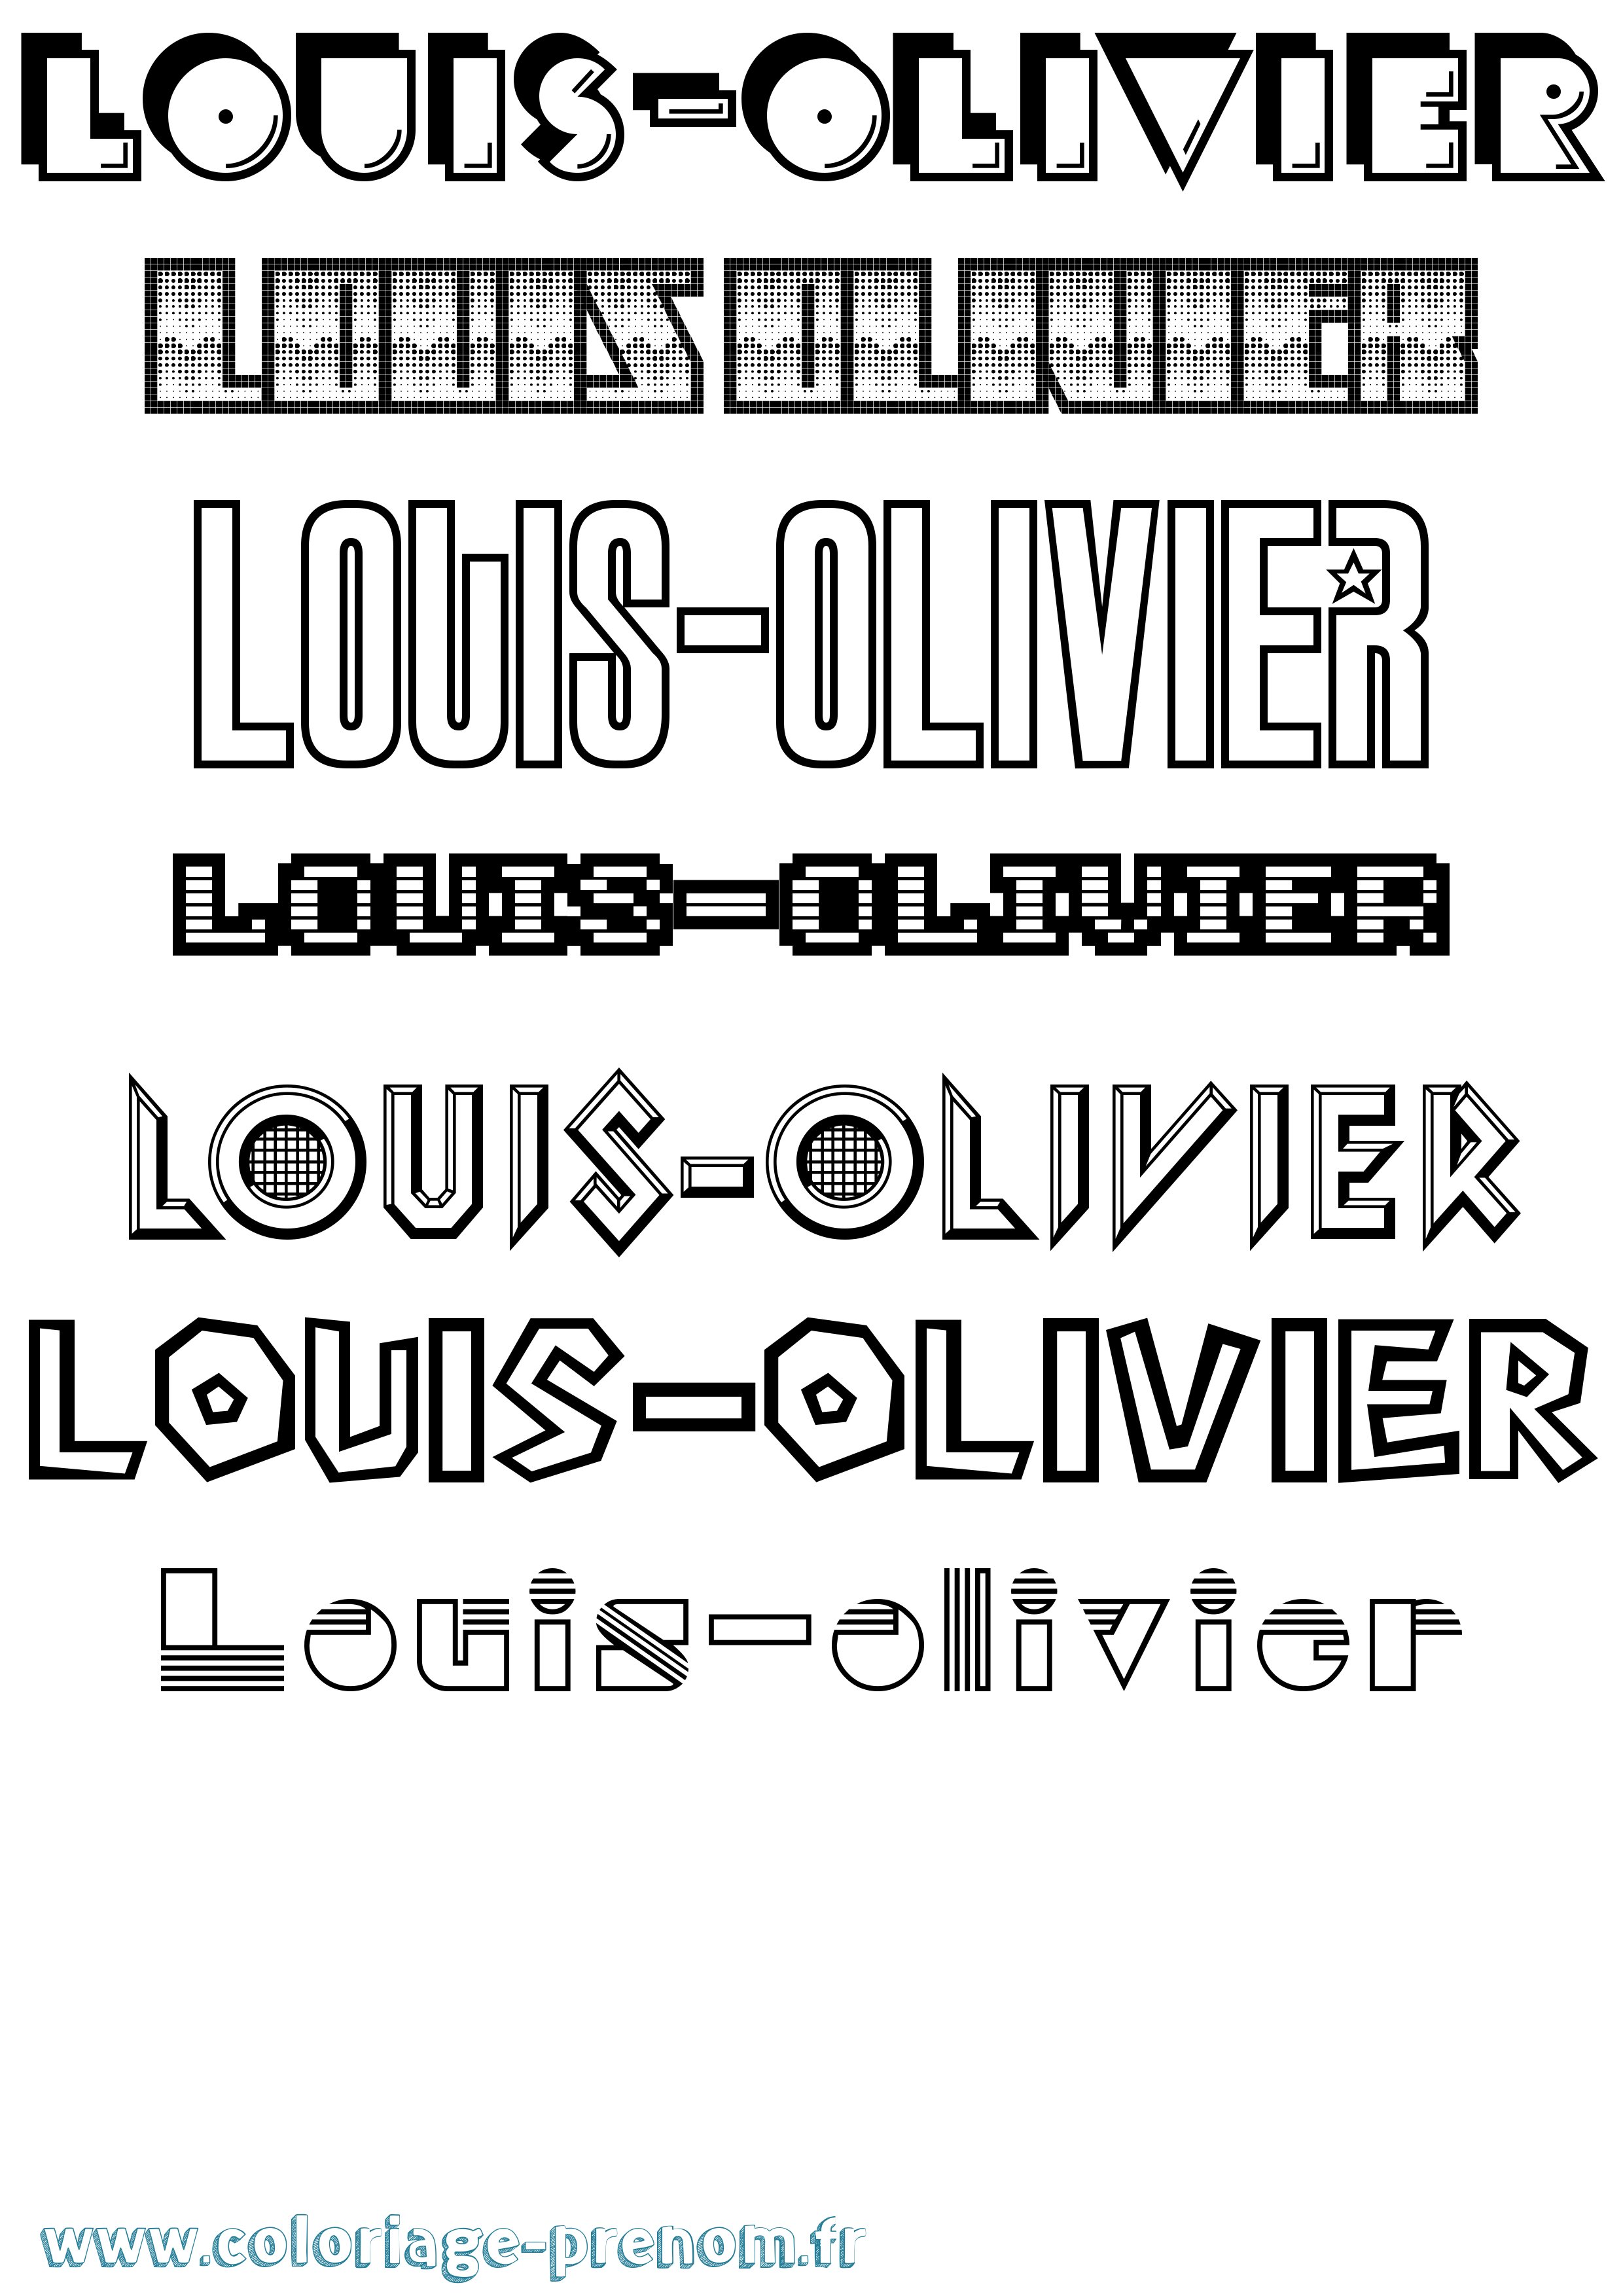 Coloriage prénom Louis-Olivier Jeux Vidéos